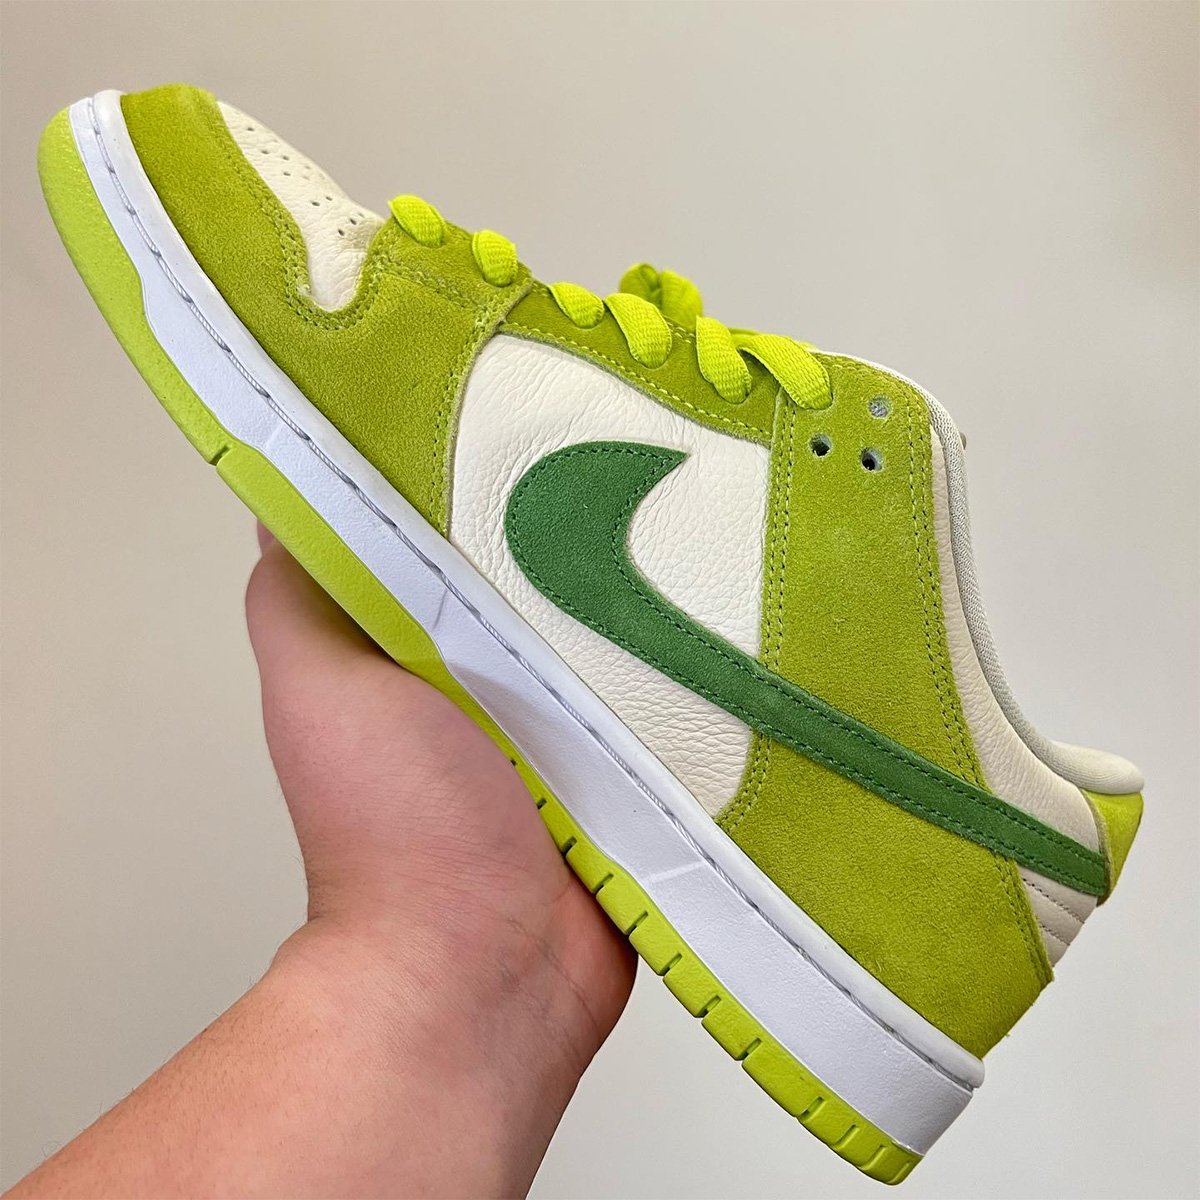 Nike SB Dunk Low Green Apple DM0807-300 Release Date